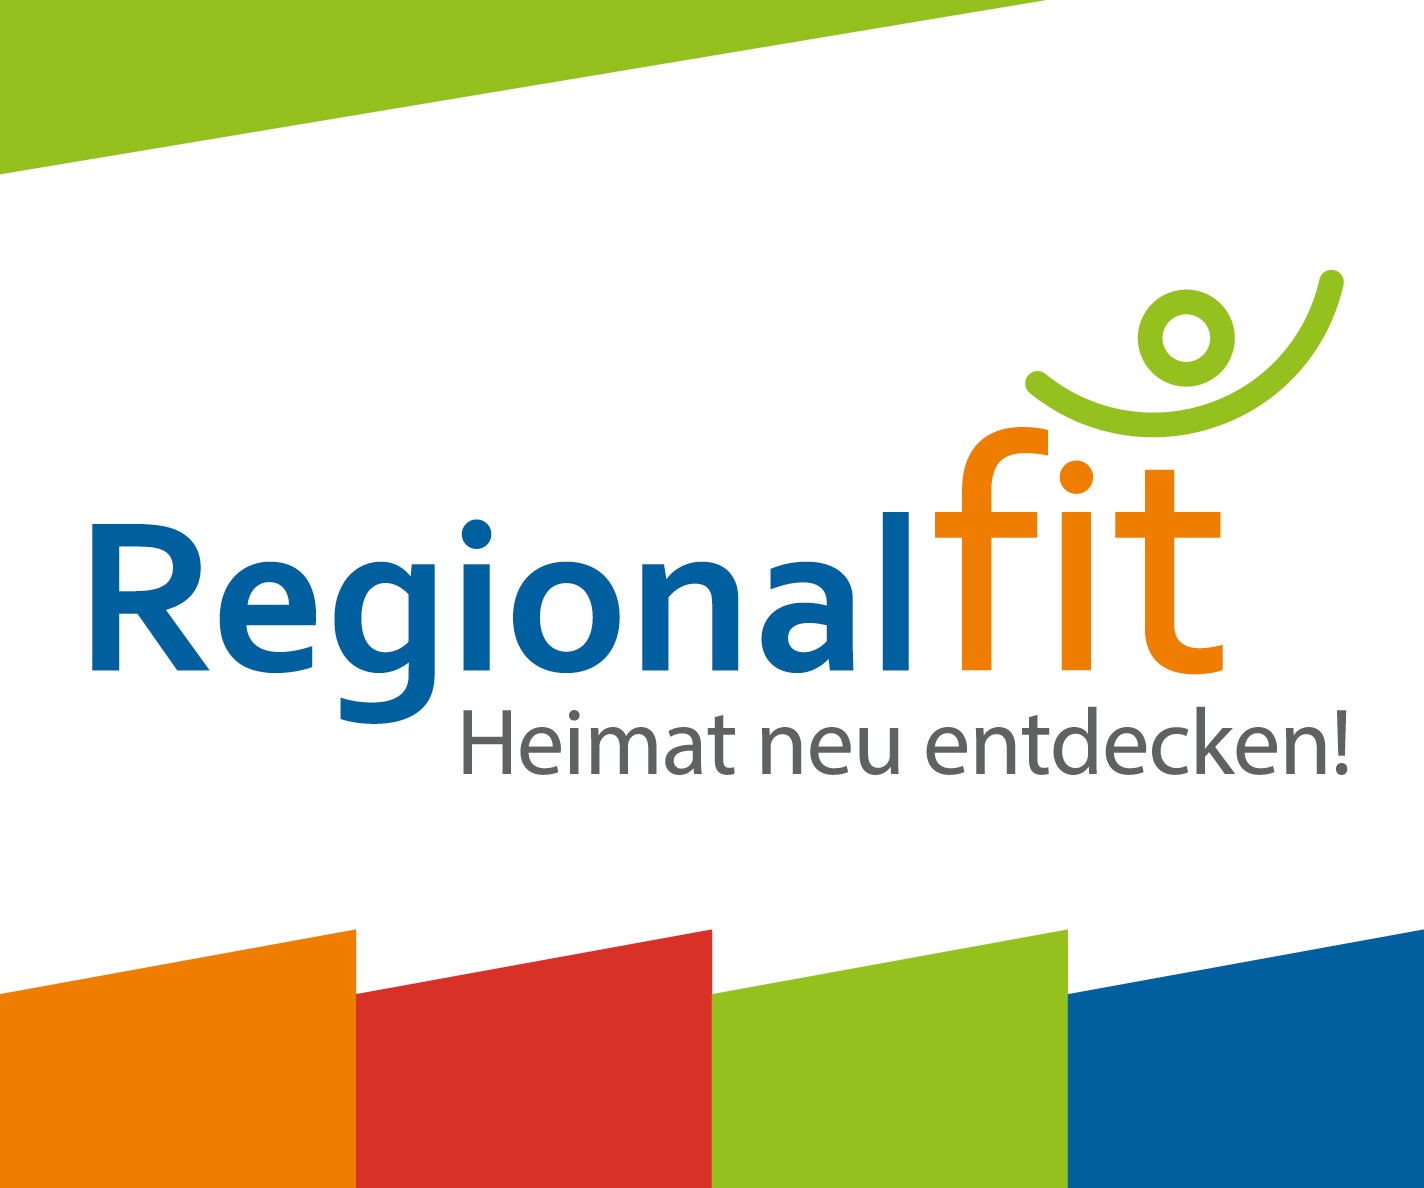 Regional fit - Heimat neu entdecken!